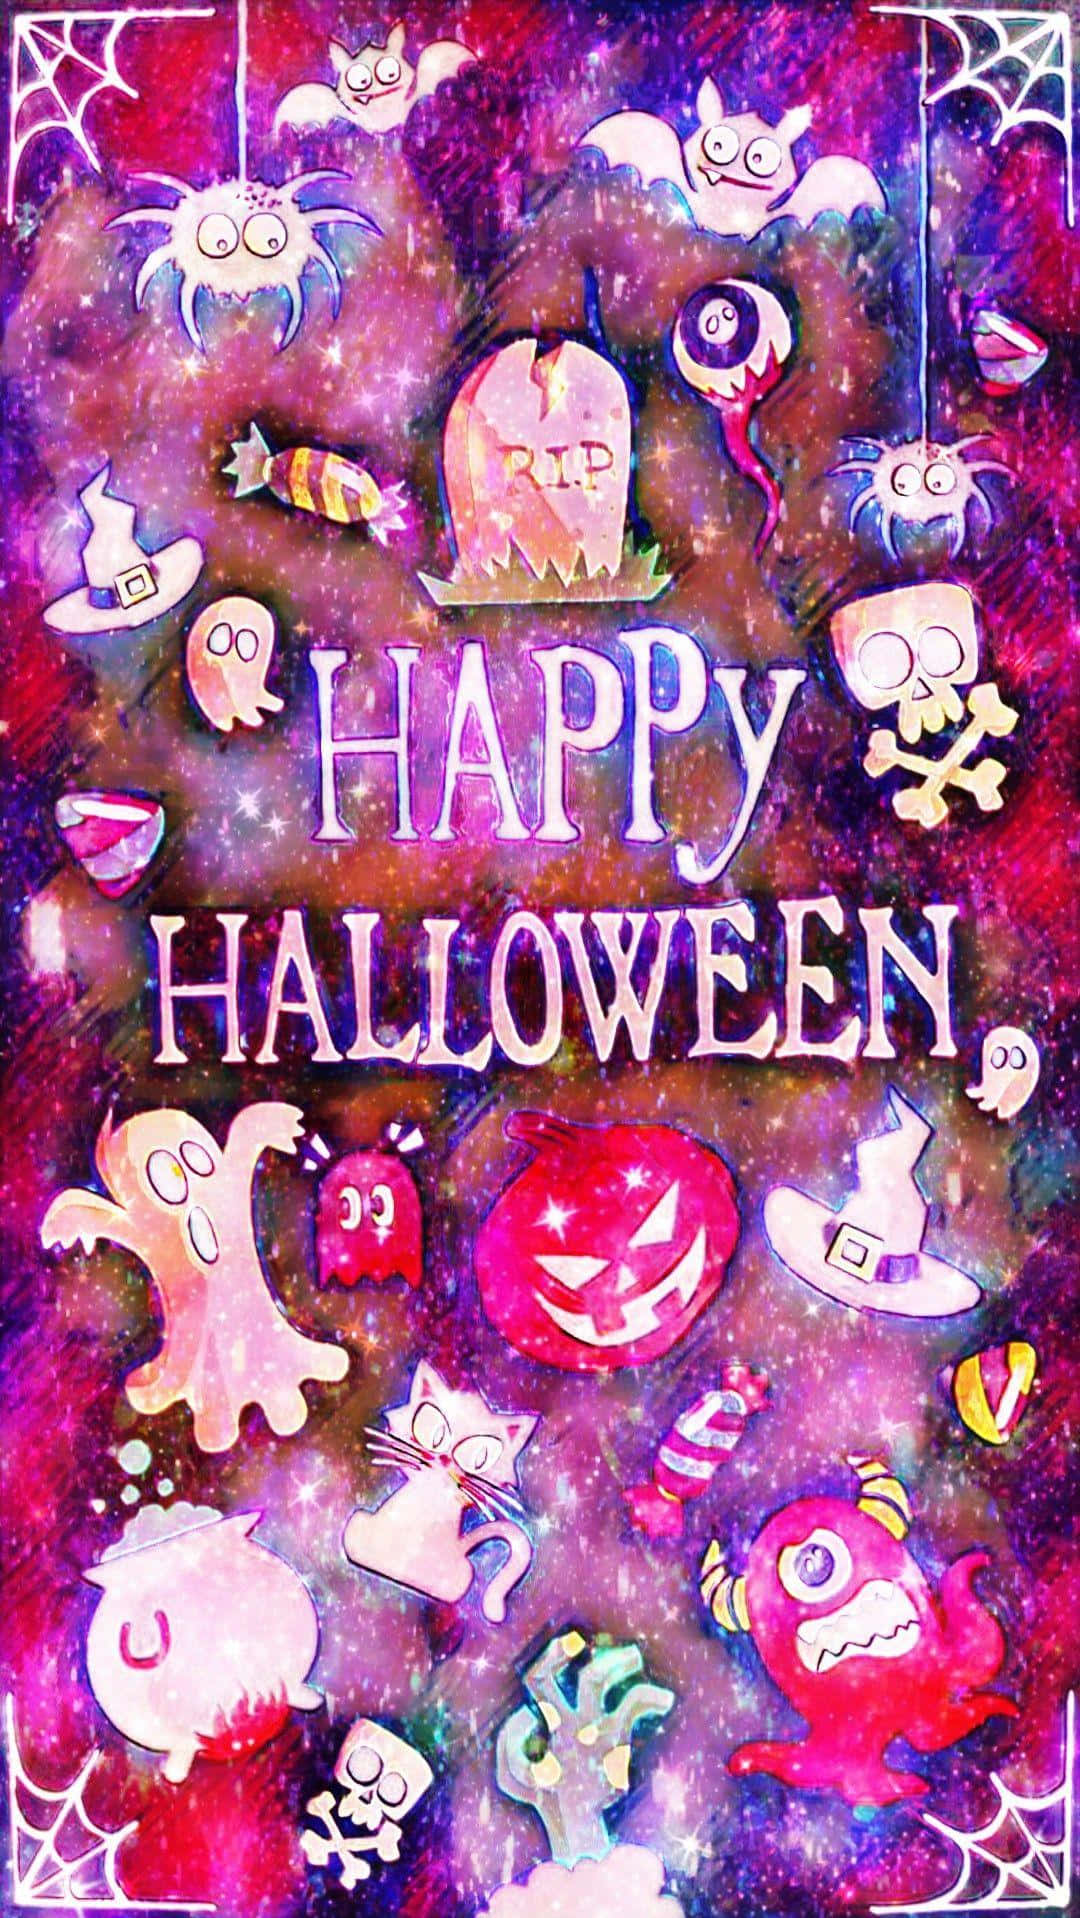 Celebrate a spooky Purple Halloween! Wallpaper